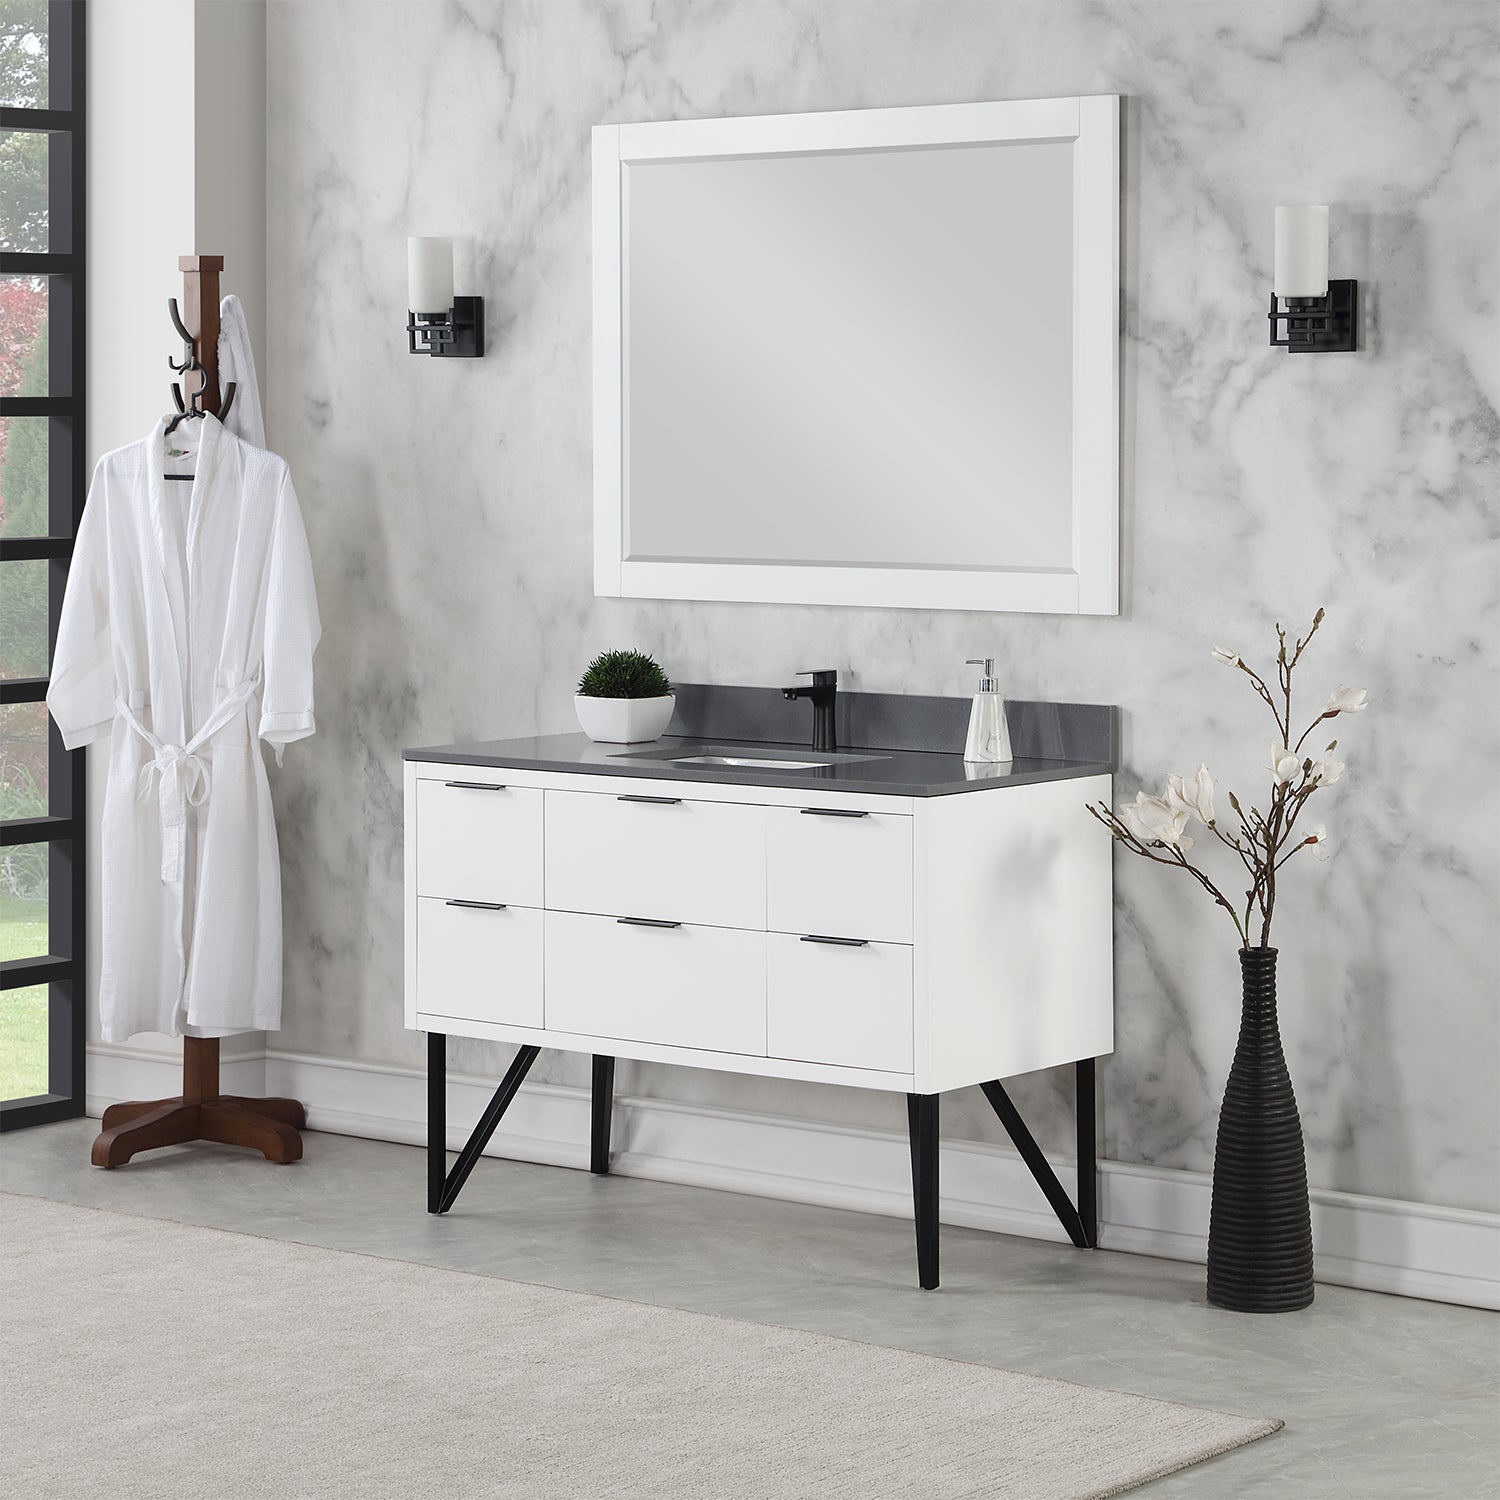 4-Piece Bathroom Accessory Set Concrete for Vanity Countertops in Grey  Stone Color